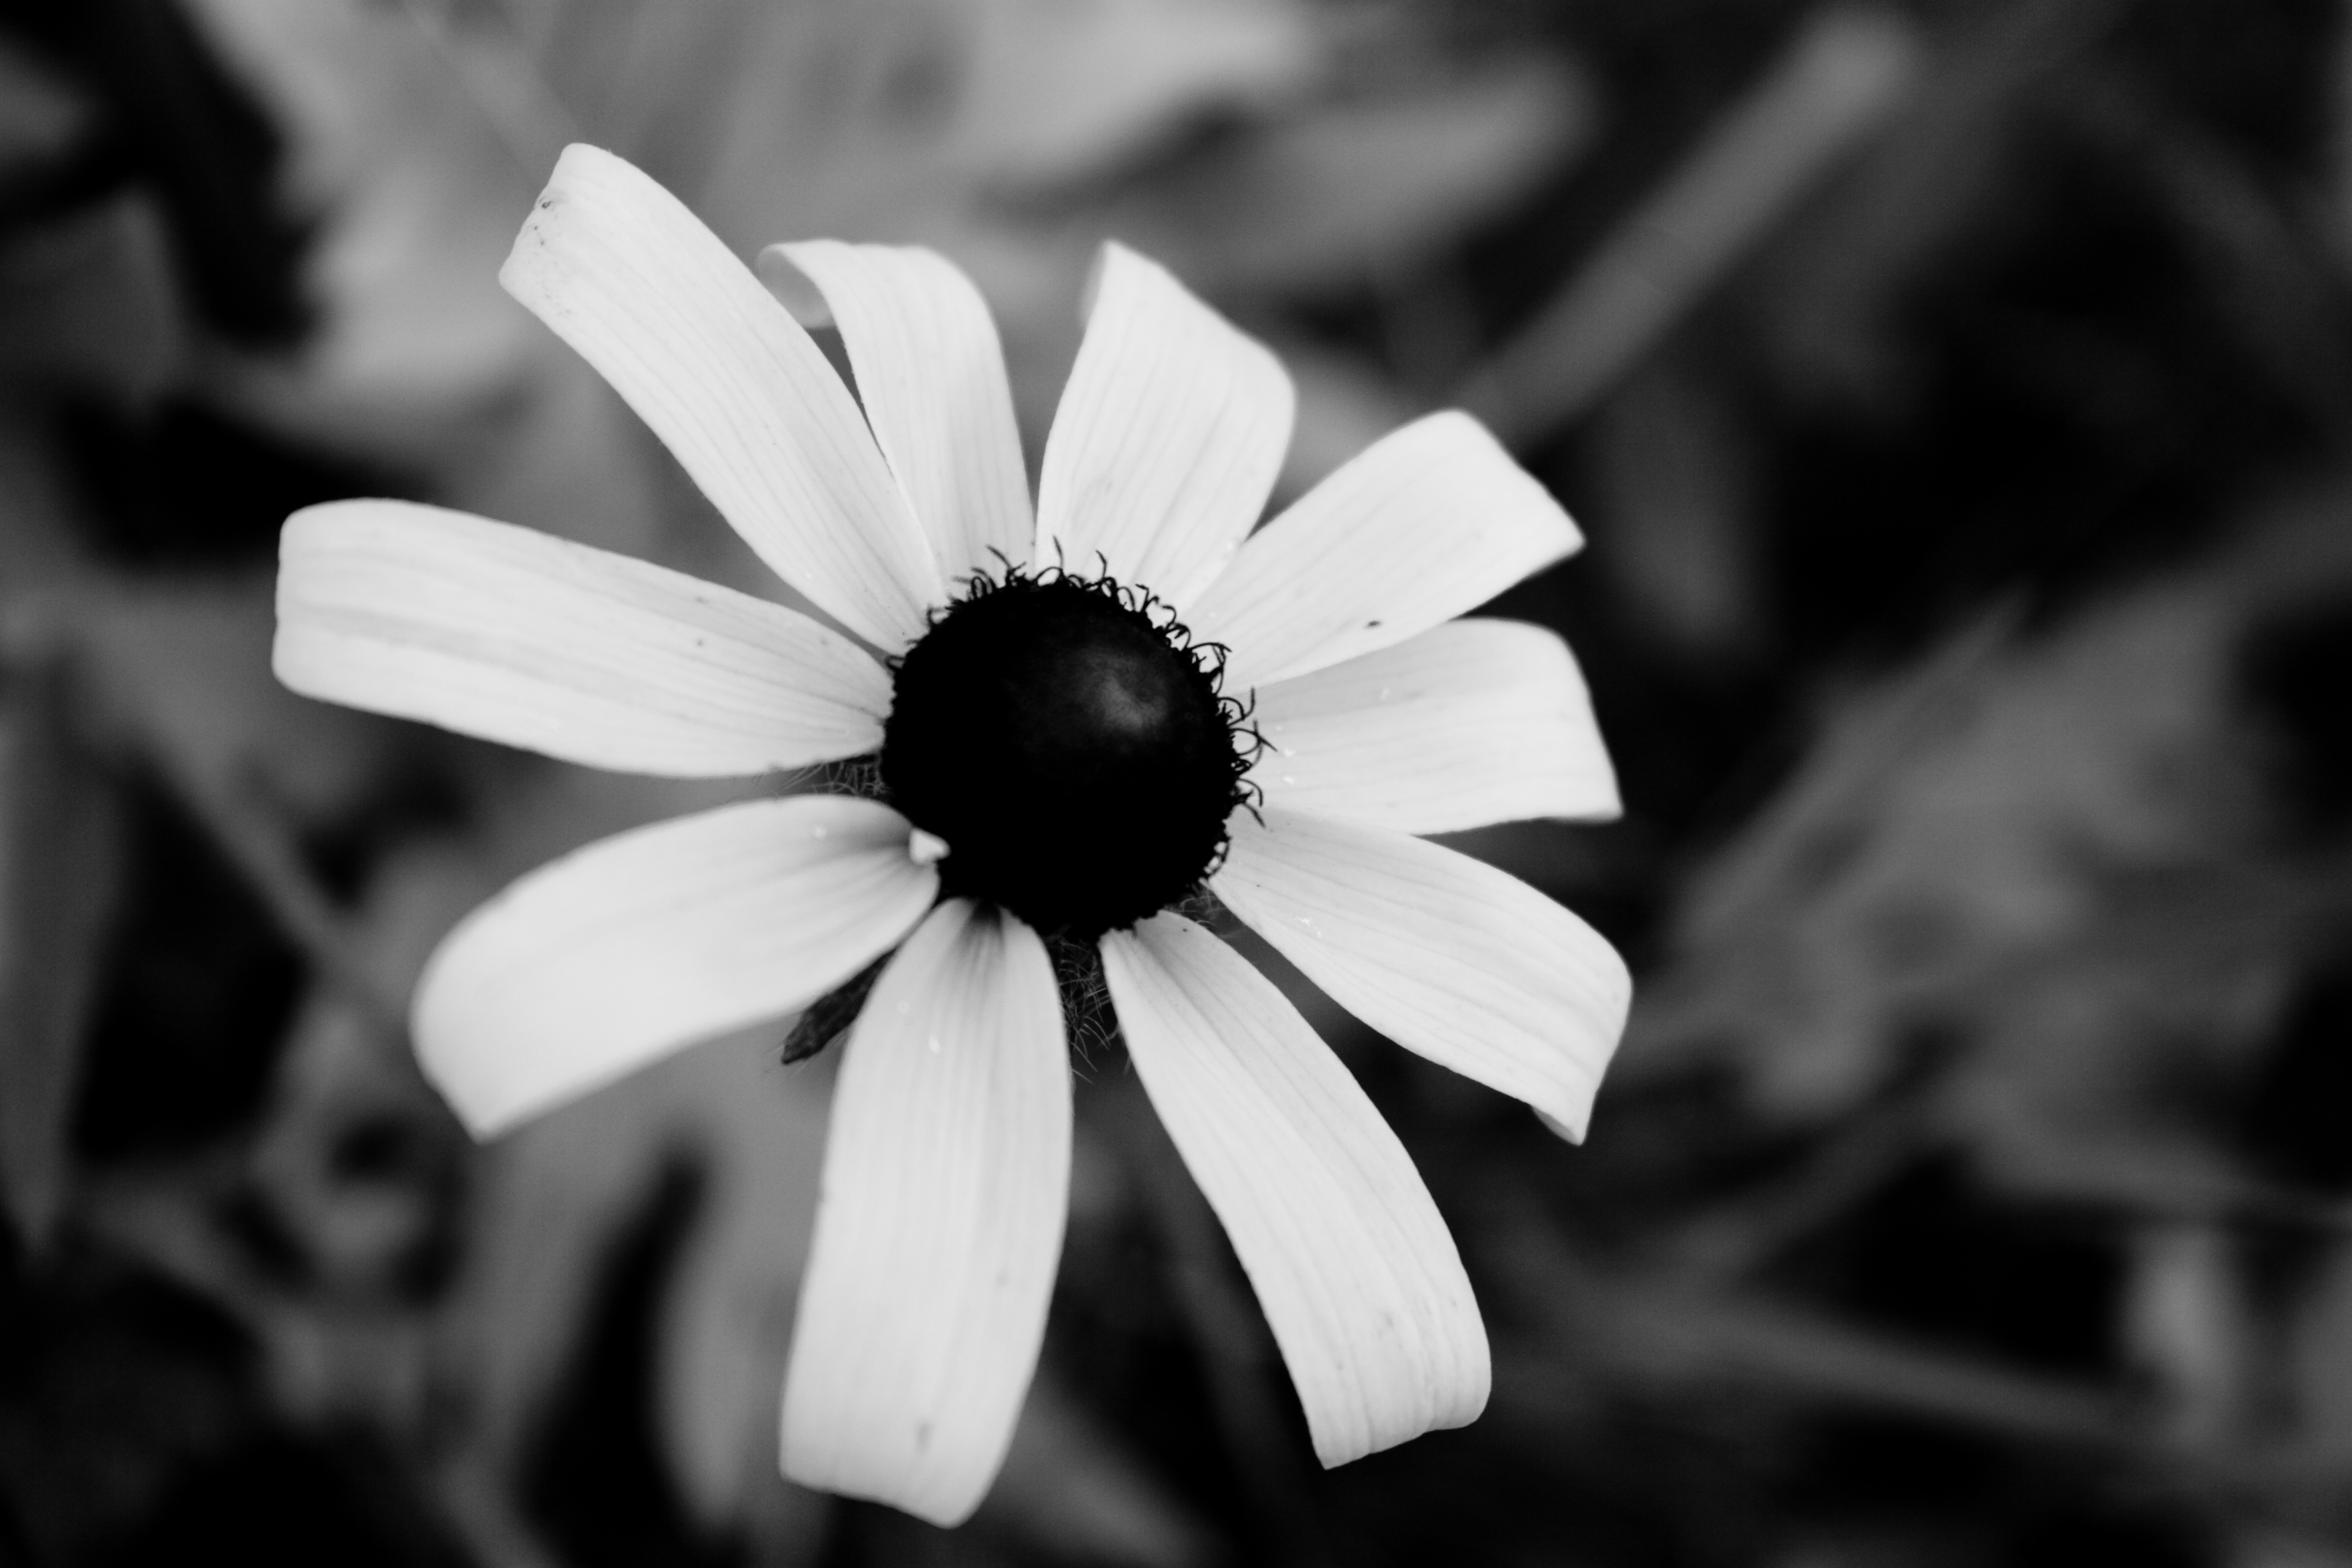 검은 색과 흰색 꽃 벽지,하얀,흑백 사진,검정색과 흰색,꽃잎,검정